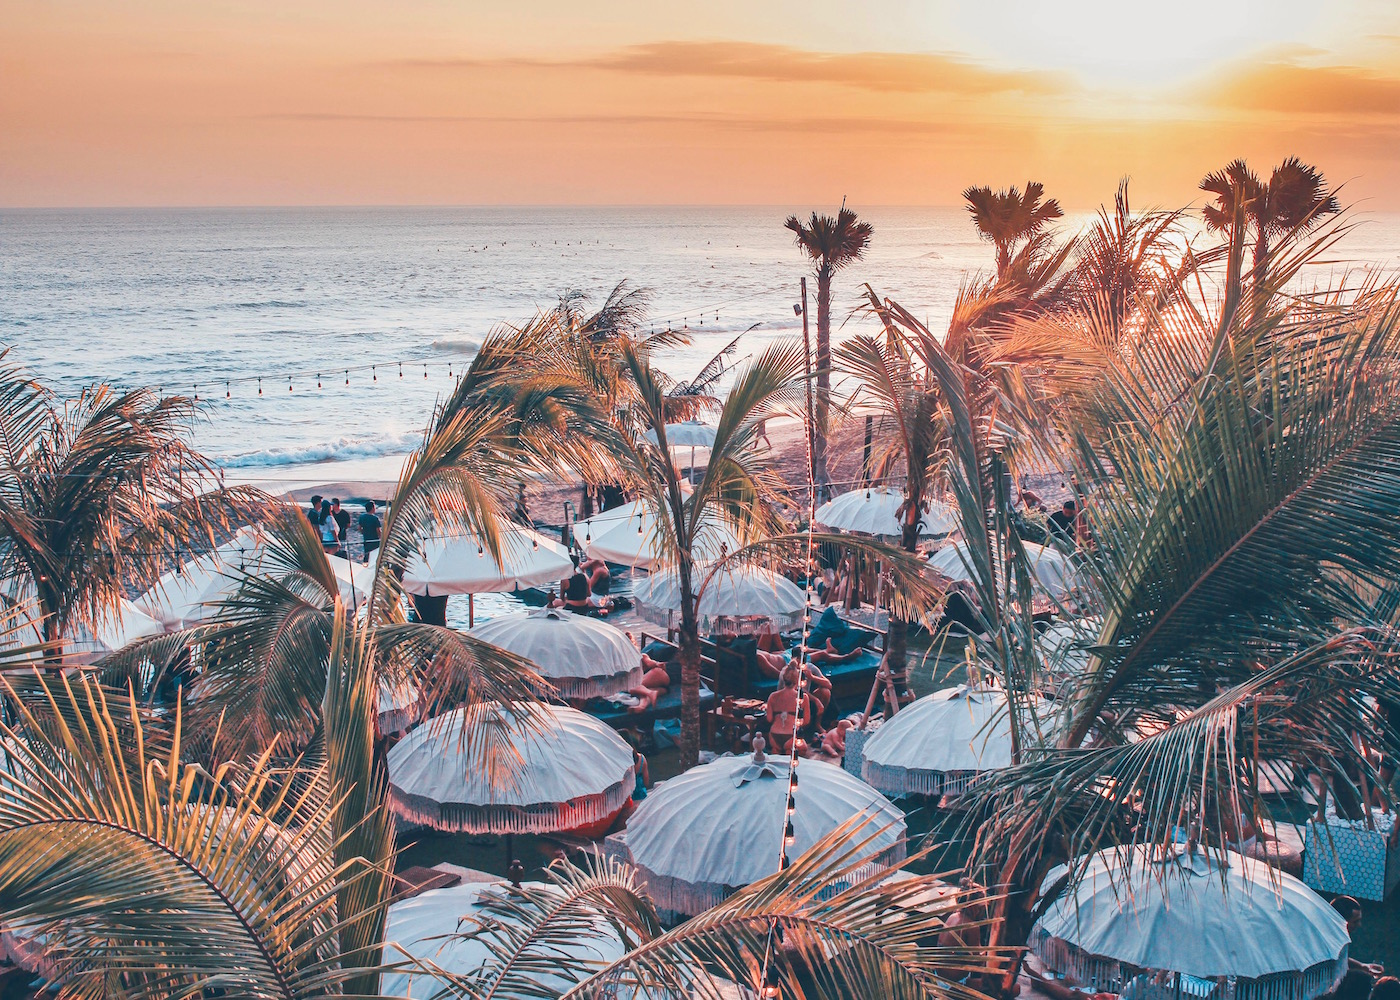 The Lawn Beach Club Bali